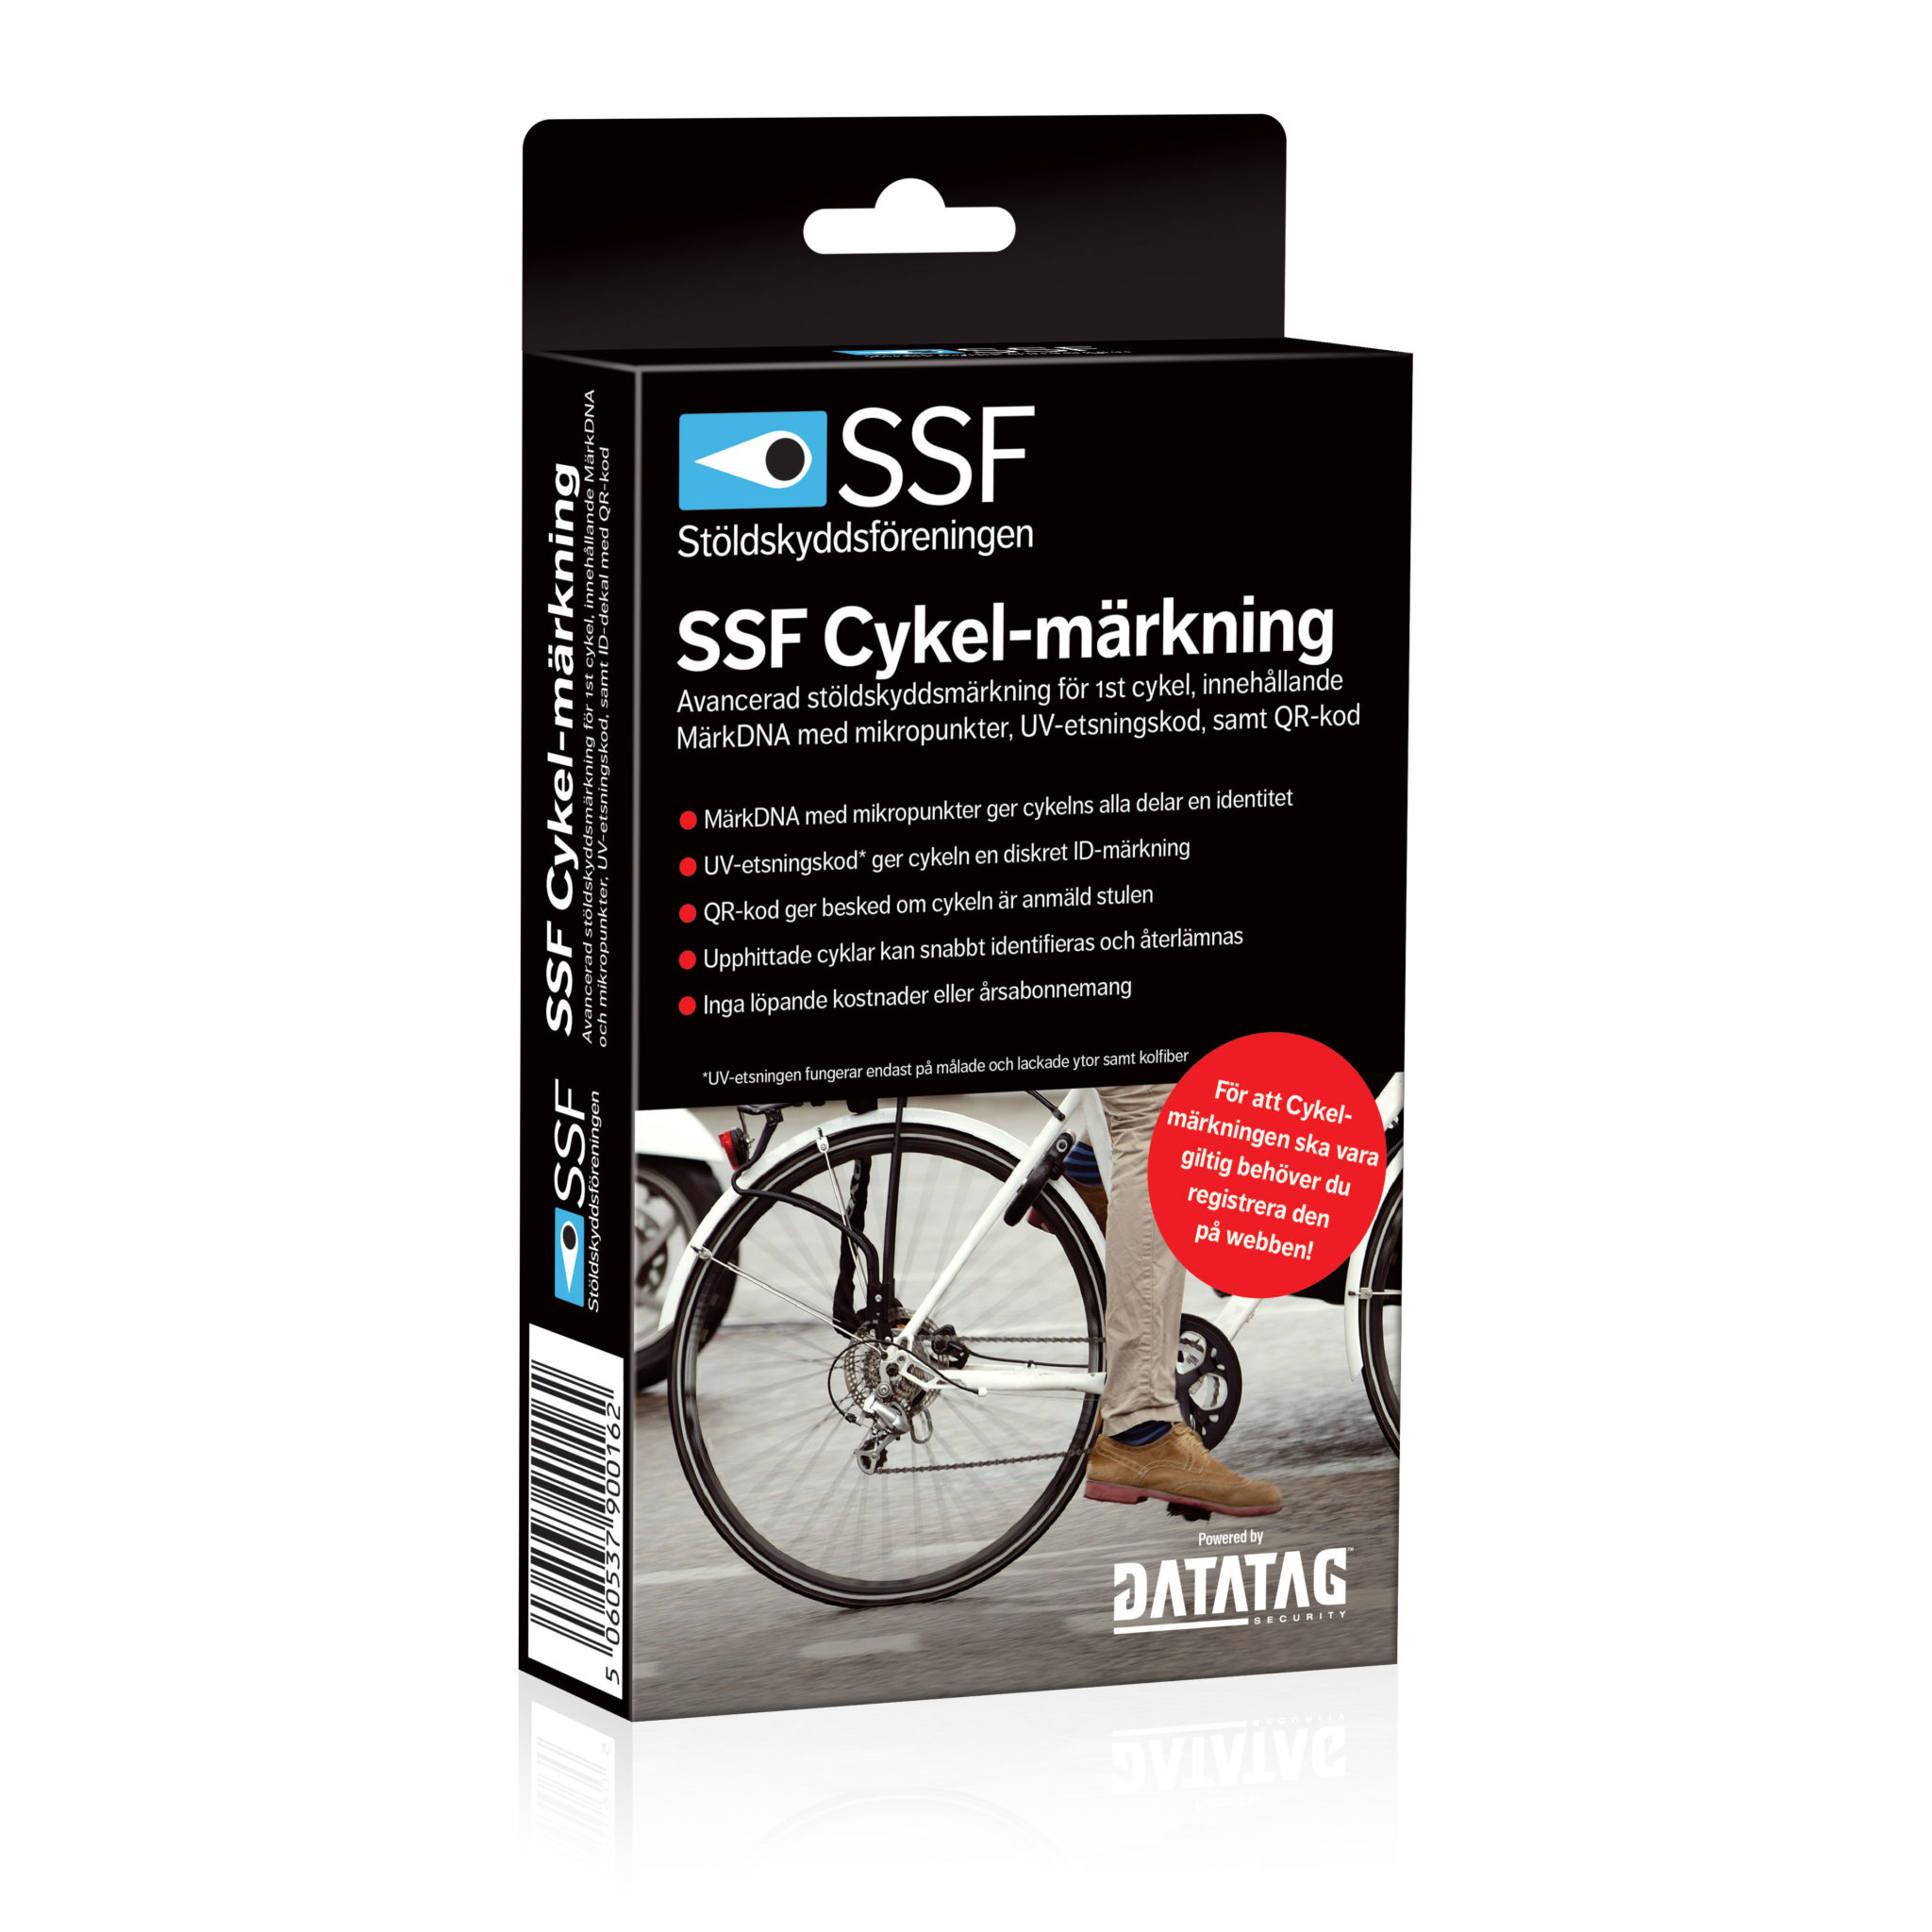 SSF cykelmärkning